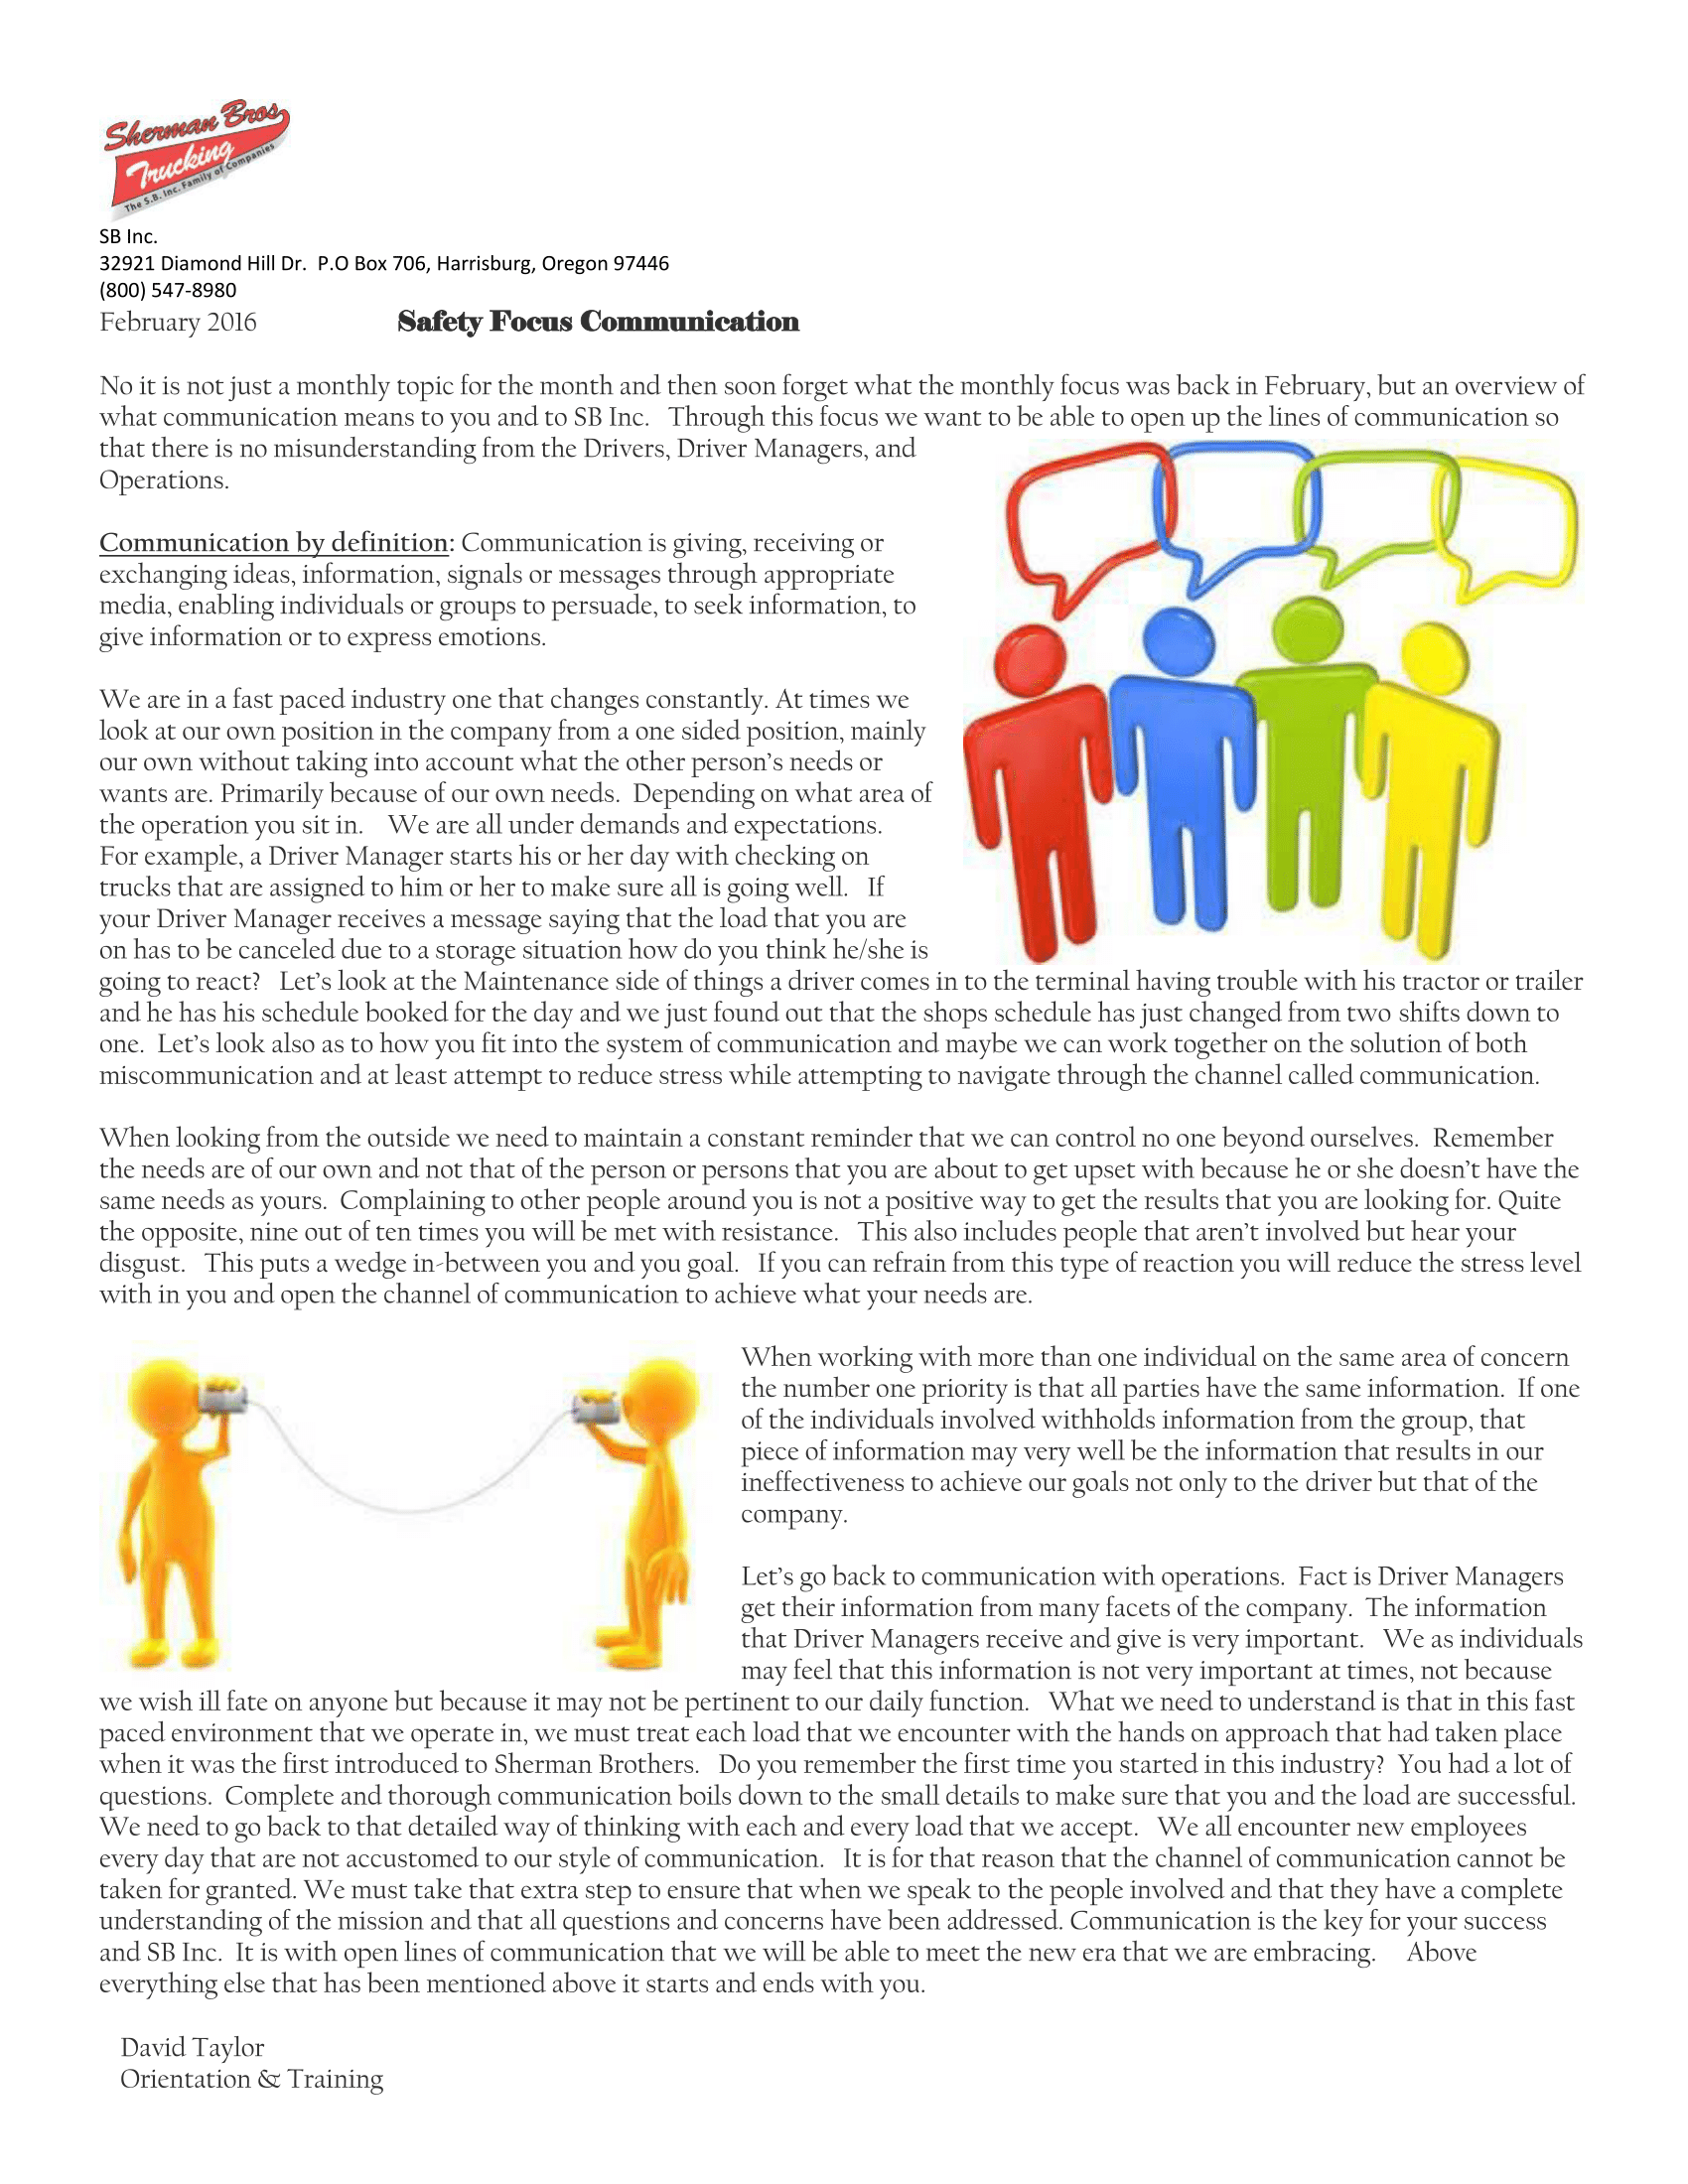 Feb - Communication-1.png